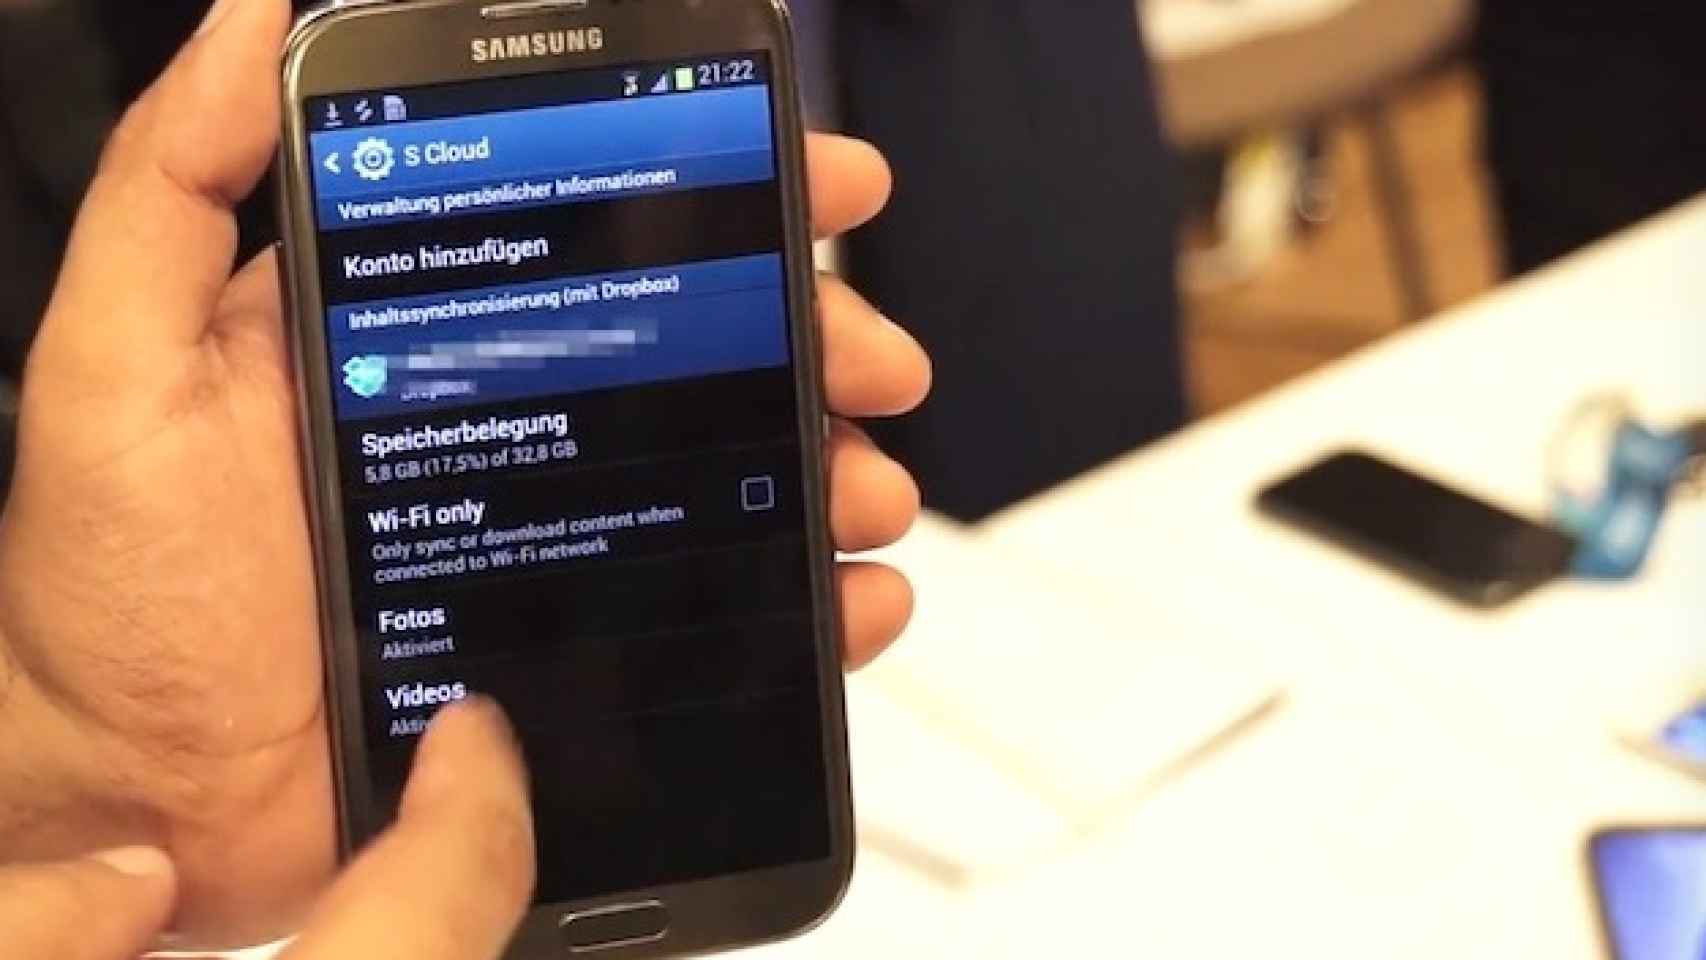 Samsung S Cloud se deja ver en el Galaxy Note 2